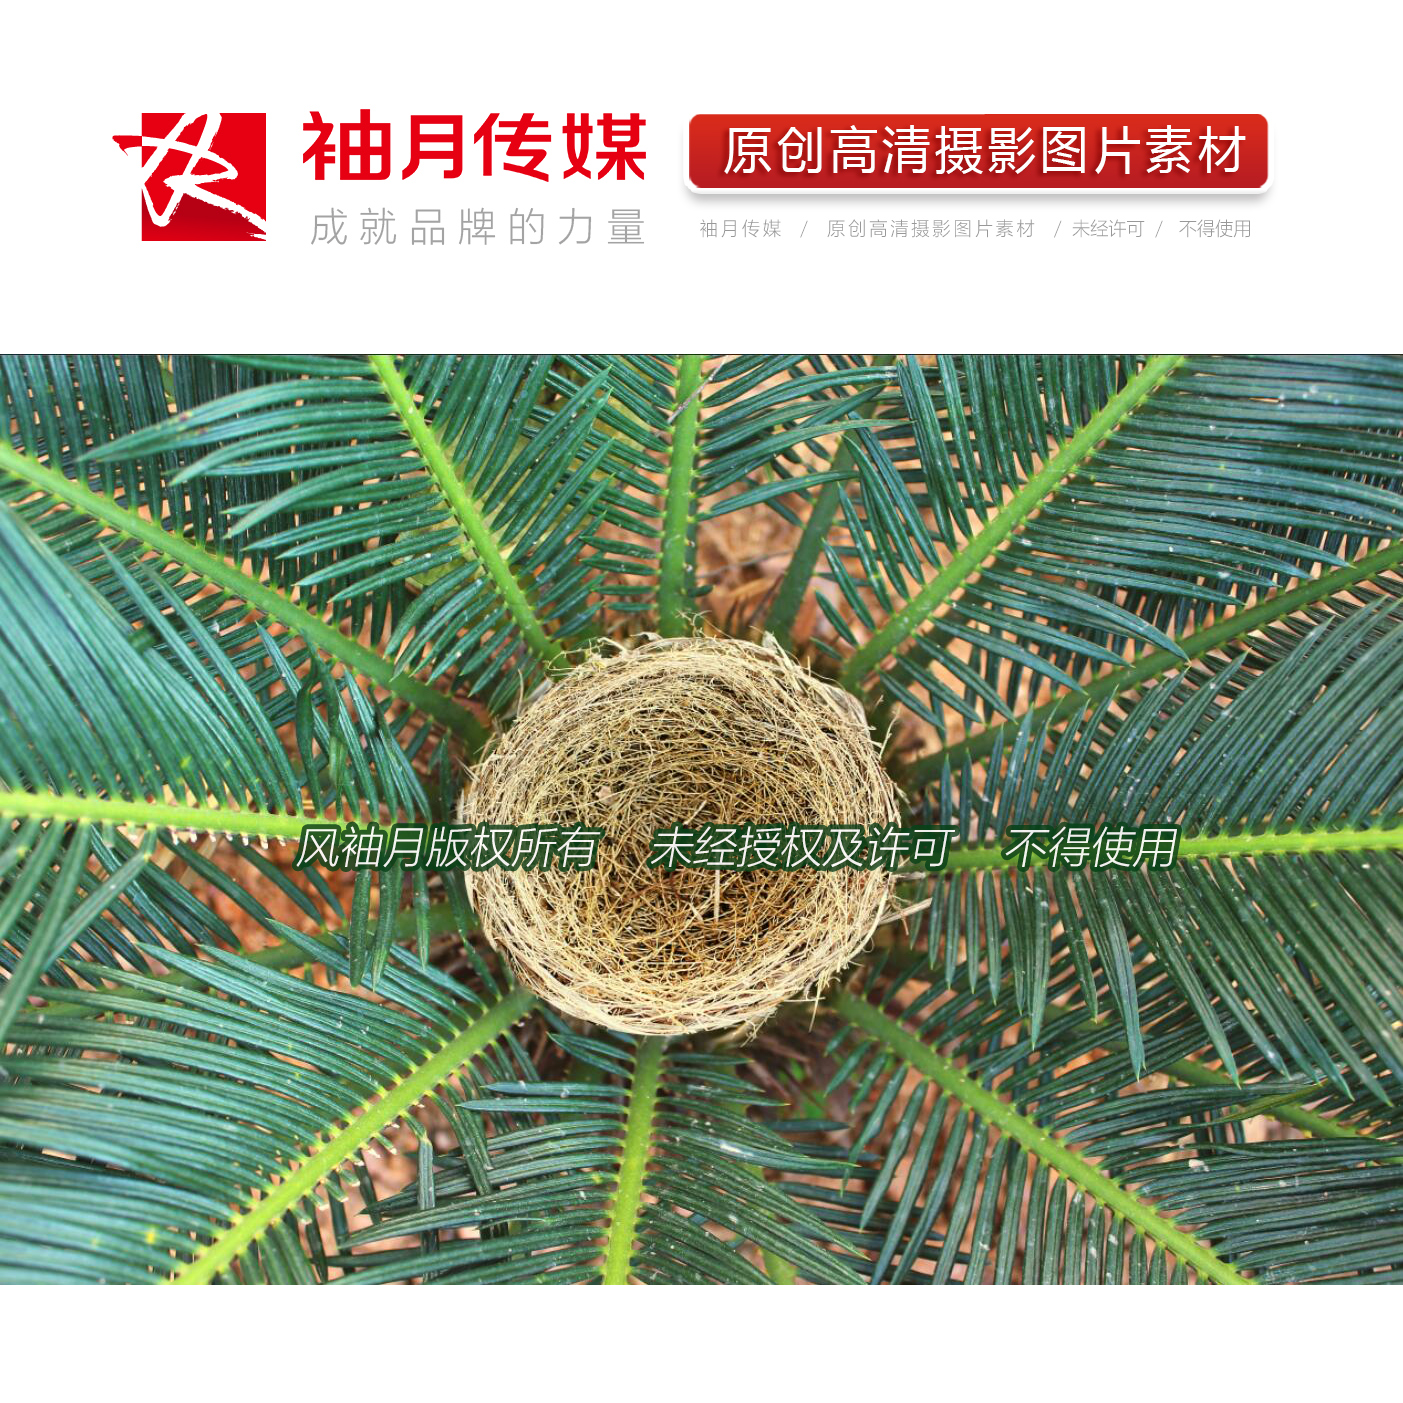 1张藏身铁树中的鸟巢高清摄影图片鸟类保护鸟窝苏铁广告图片素材